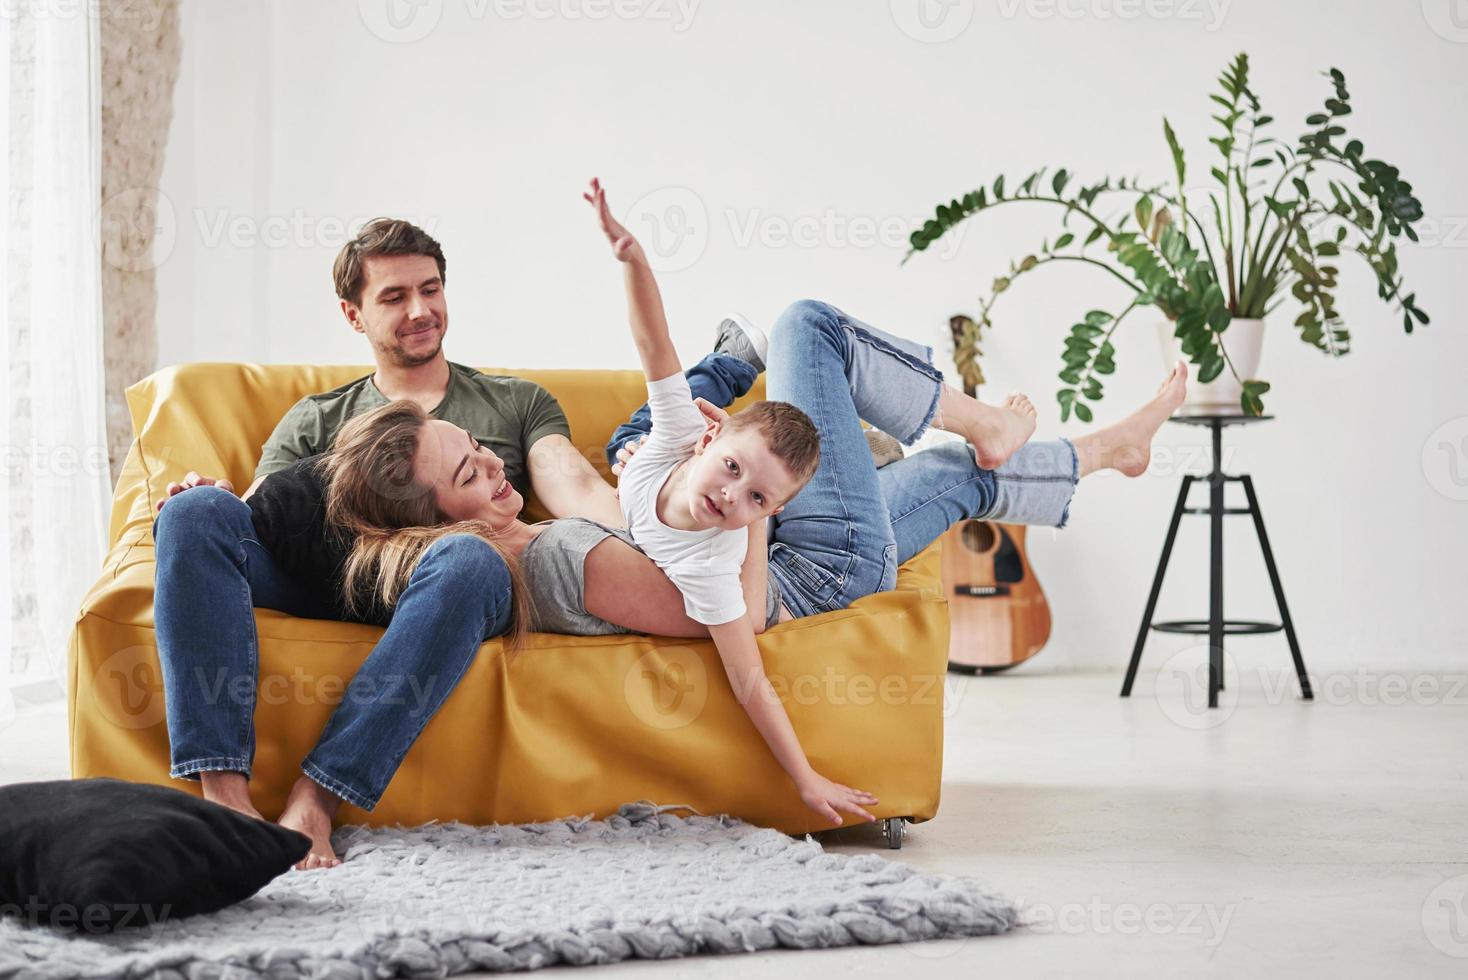 mãos nas laterais como um avião. família feliz se diverte no sofá amarelo na sala de sua nova casa foto